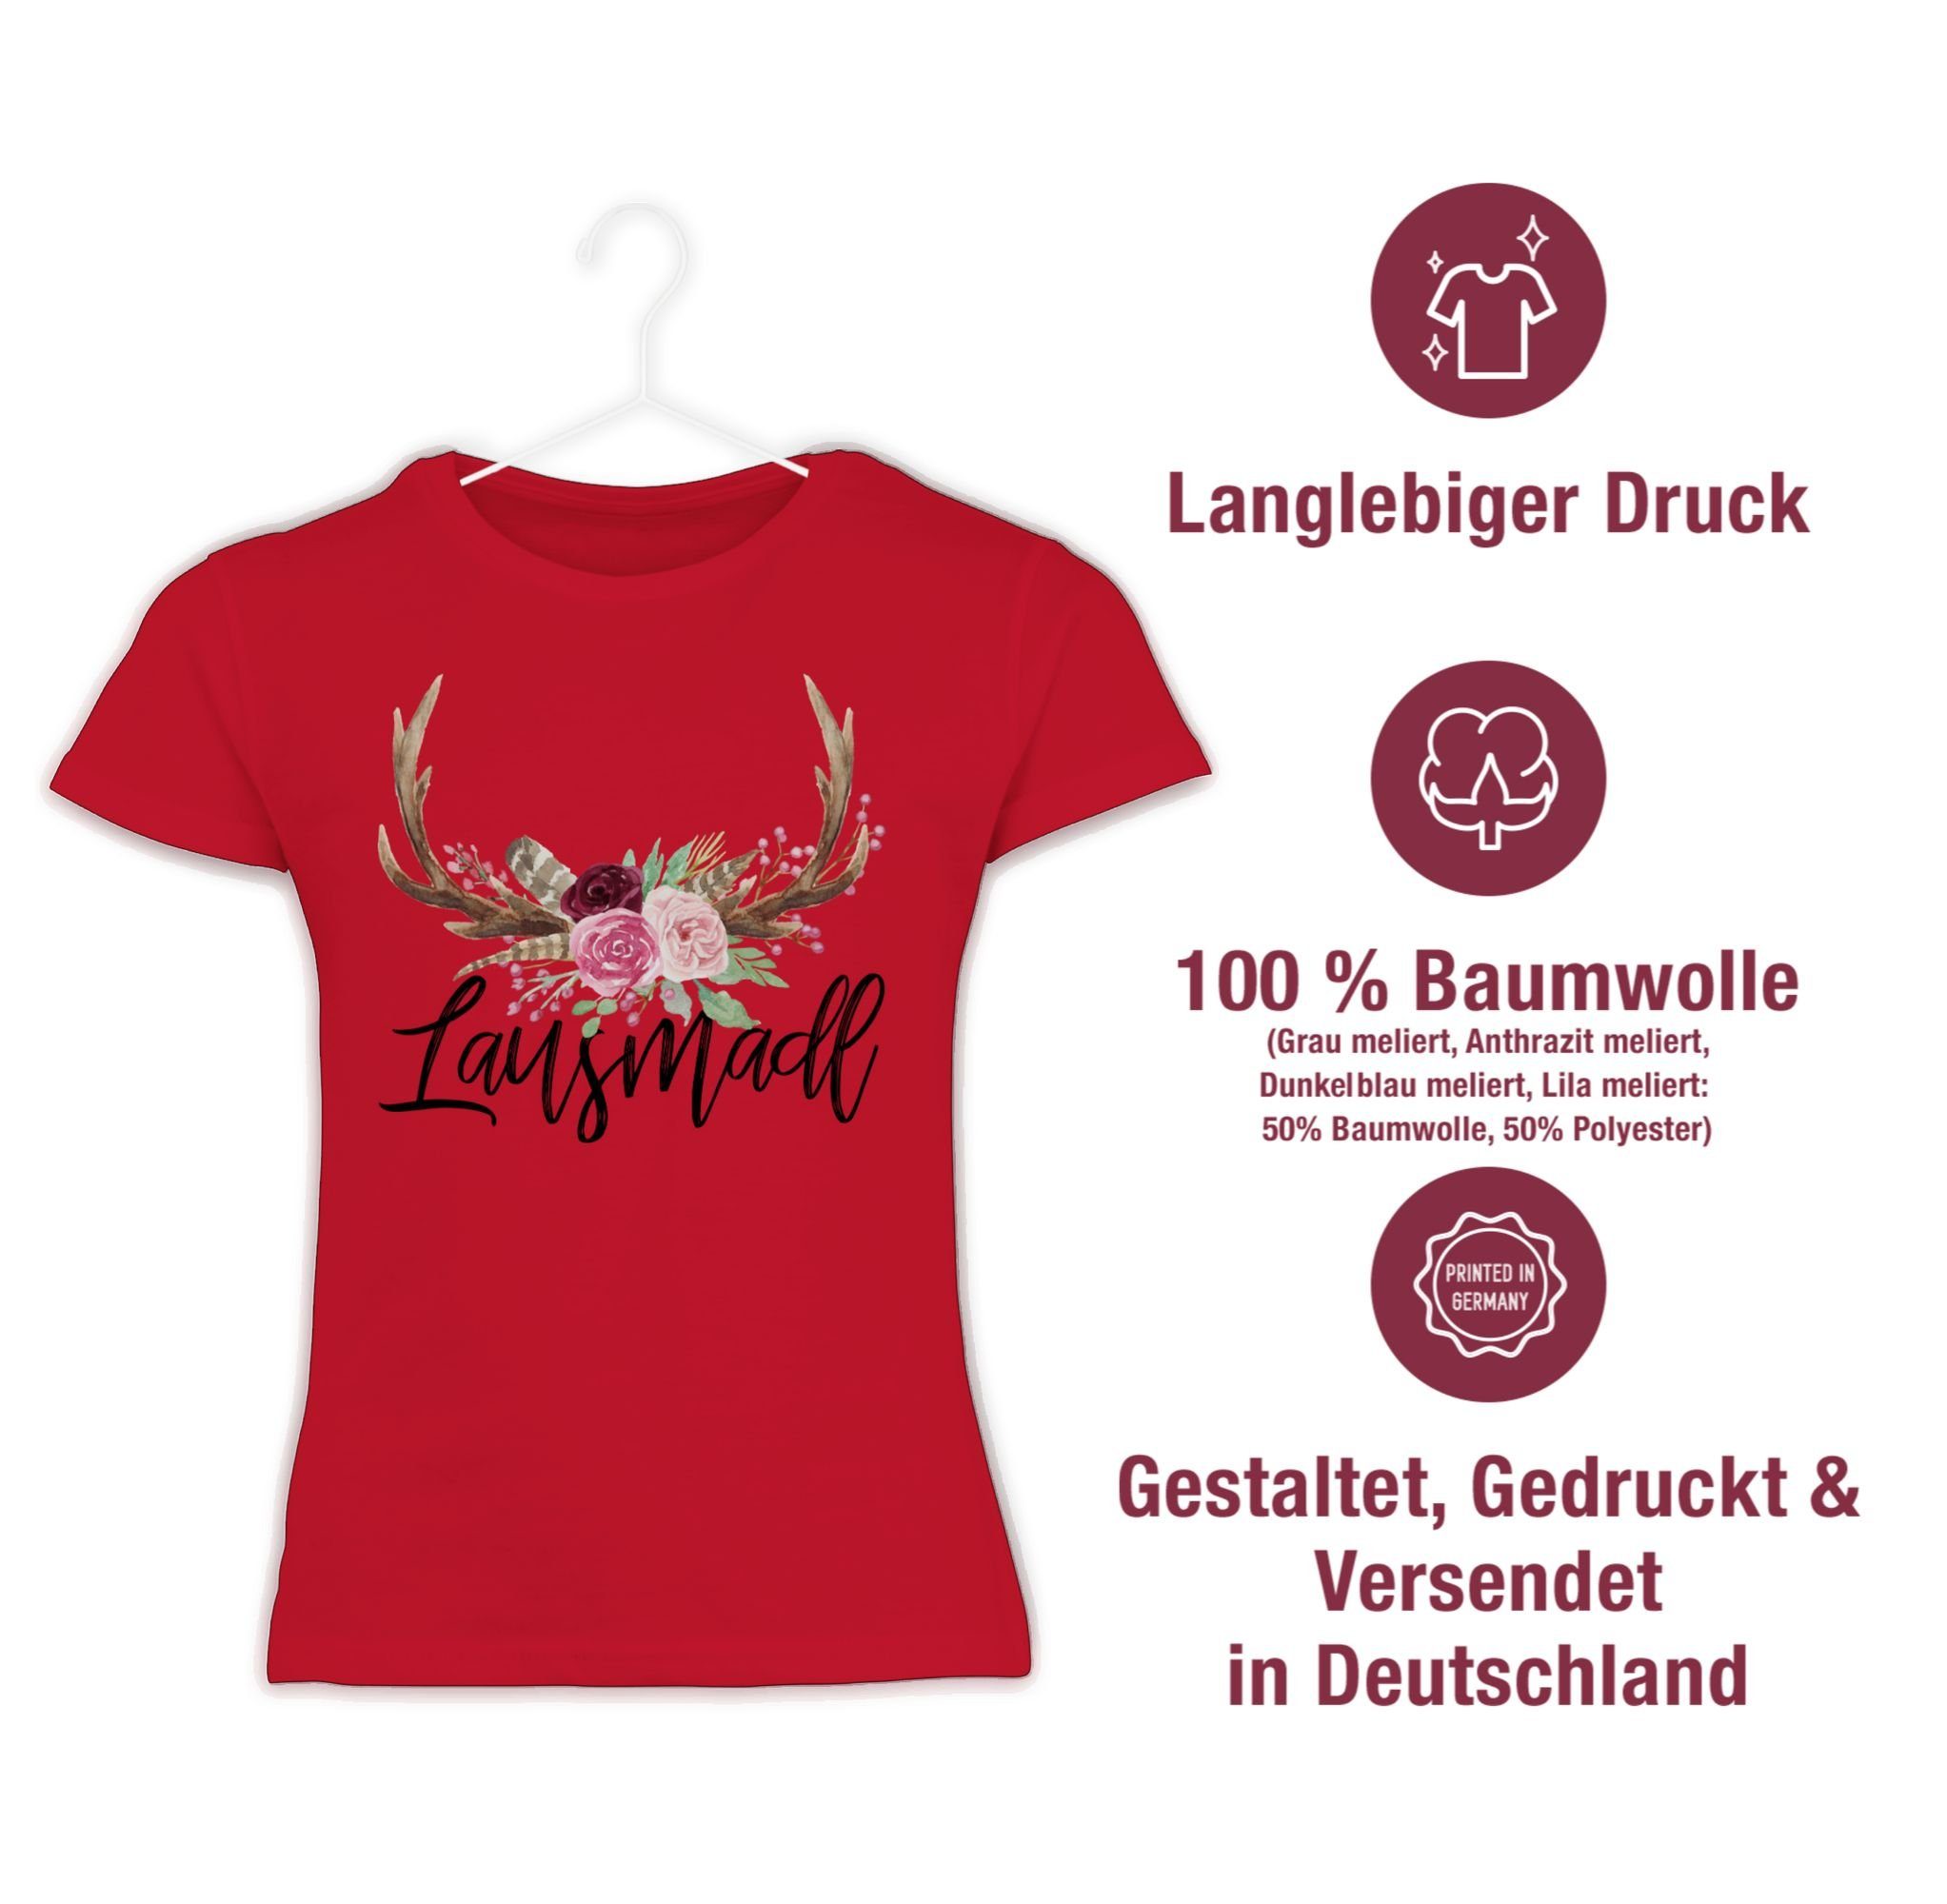 Oktoberfest Hirschgeweih Rot T-Shirt Lausmadl für 3 Shirtracer Mode Kinder Outfit